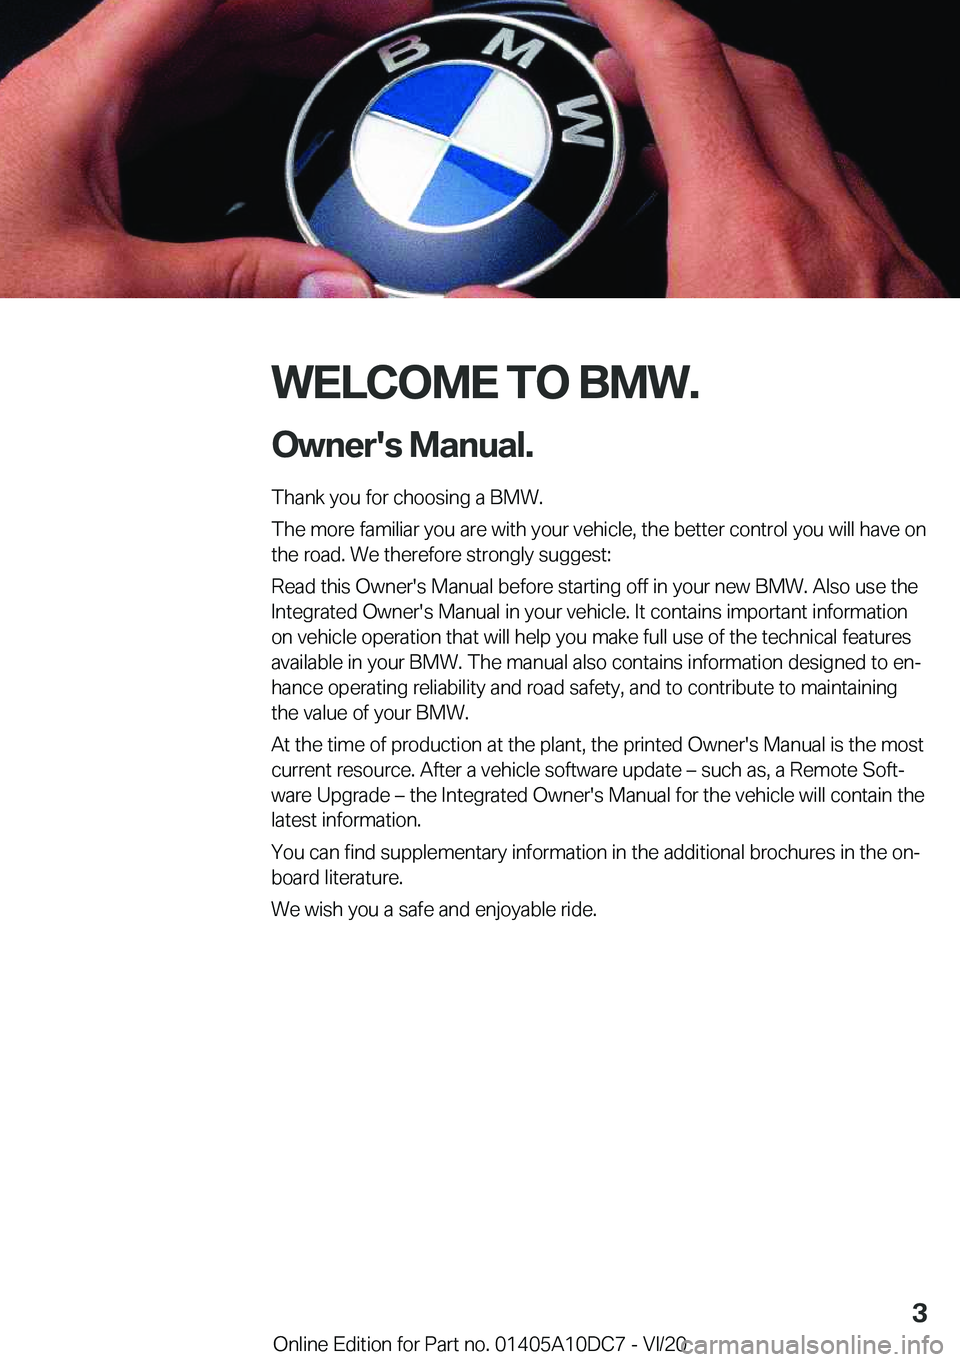 BMW X5M 2021  Owners Manual �W�E�L�C�O�M�E��T�O��B�M�W�.�O�w�n�e�r�'�s��M�a�n�u�a�l�.
�T�h�a�n�k��y�o�u��f�o�r��c�h�o�o�s�i�n�g��a��B�M�W�.
�T�h�e��m�o�r�e��f�a�m�i�l�i�a�r��y�o�u��a�r�e��w�i�t�h��y�o�u�r��v�e